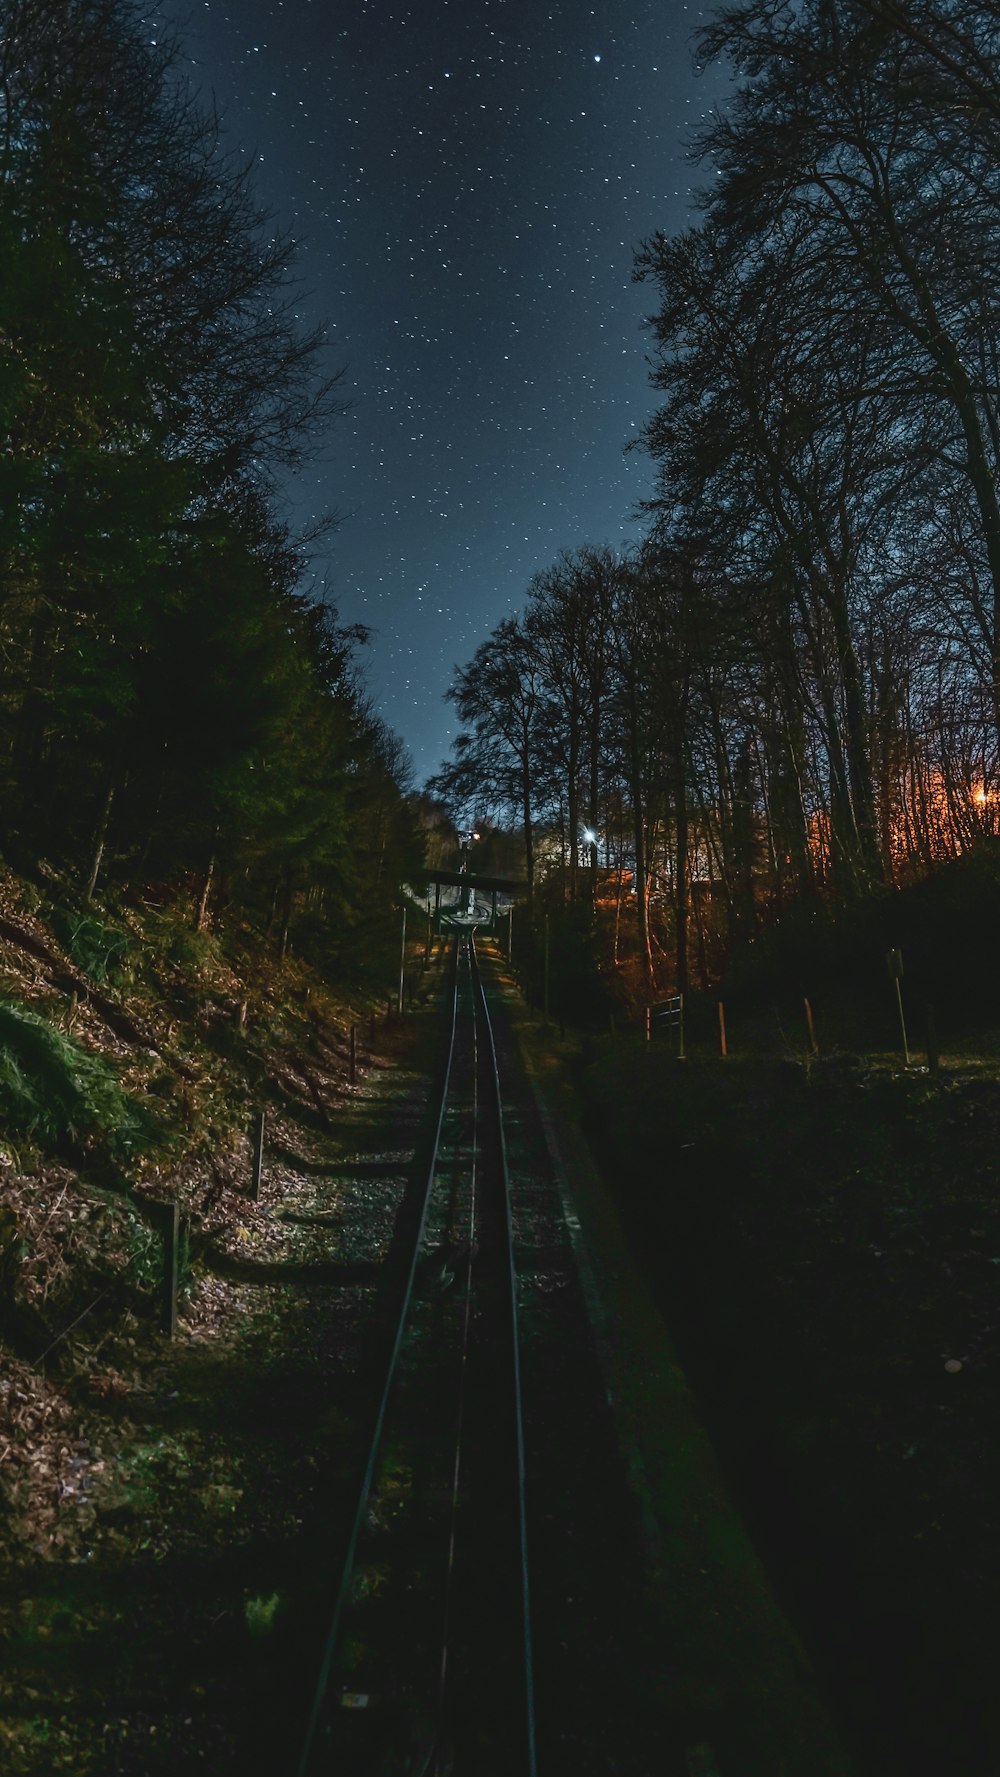 Une voie ferrée sous un ciel nocturne avec des étoiles